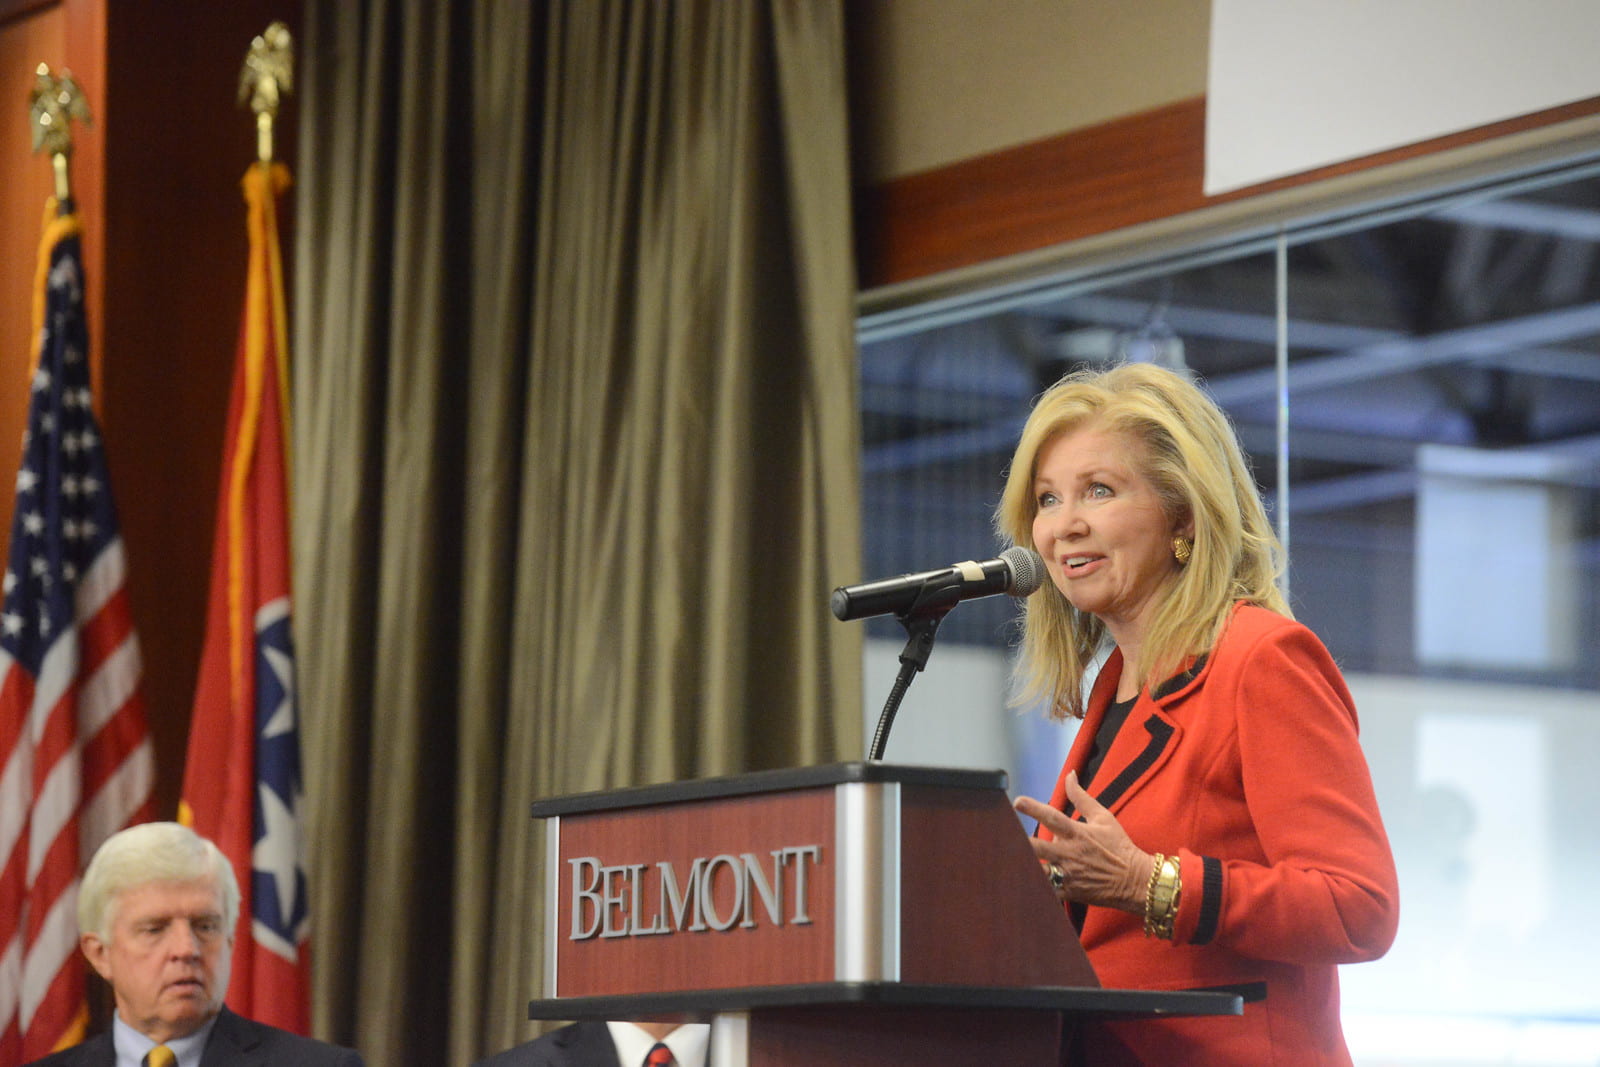 Senator Marsha Blackburn of Tennessee speaking at a podium